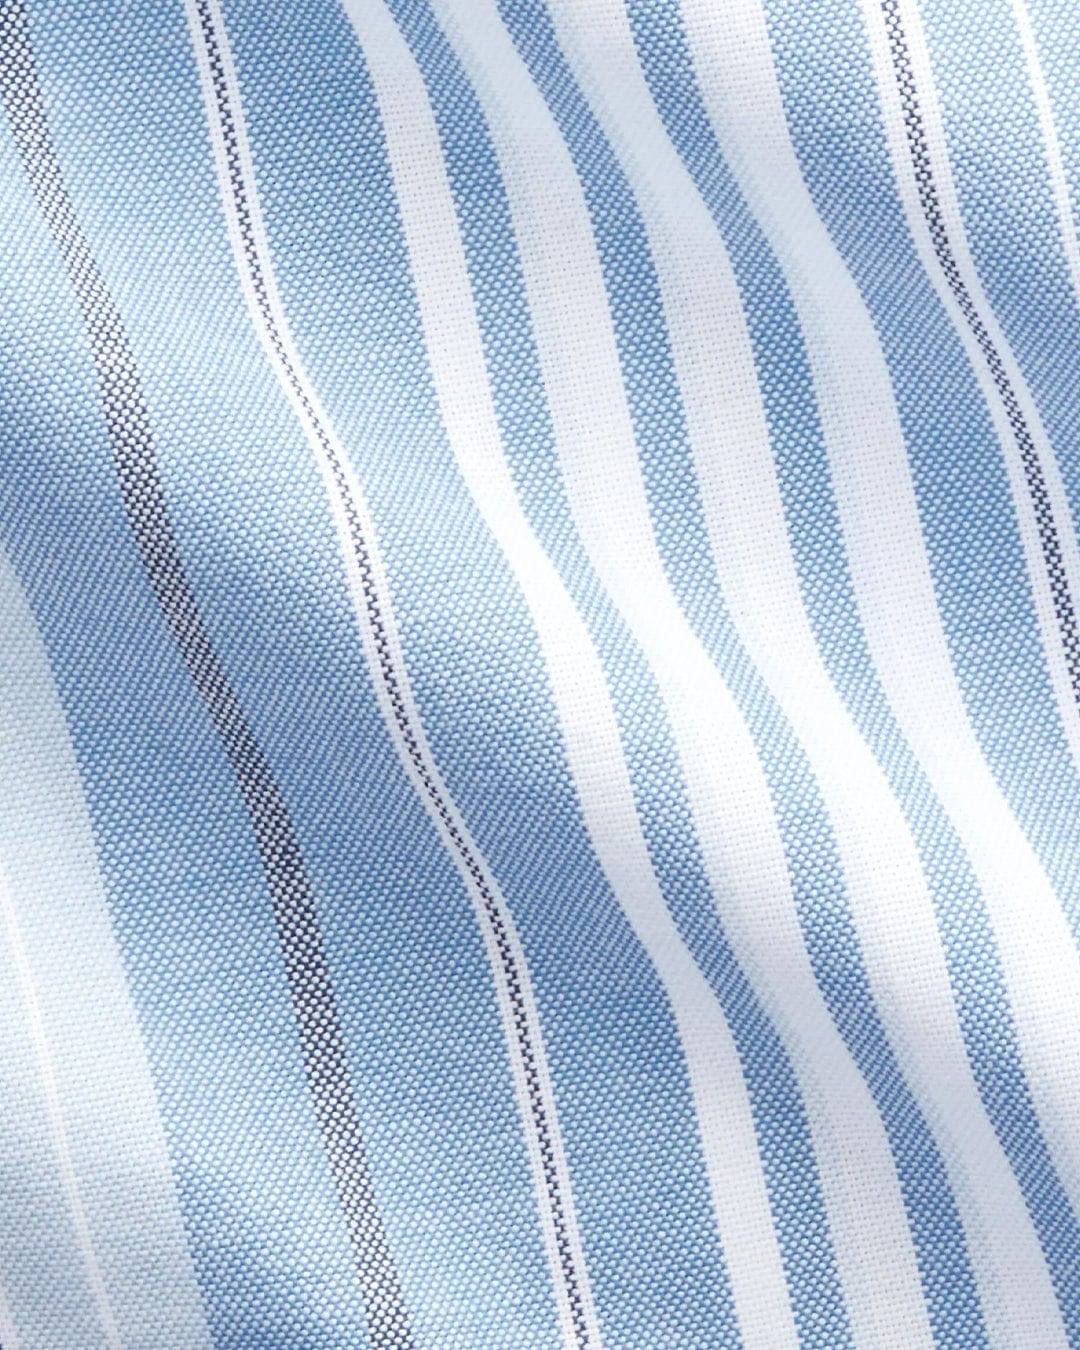 Polo Ralph Lauren Shirts Polo Ralph Lauren Blue Pattern Striped Shirt